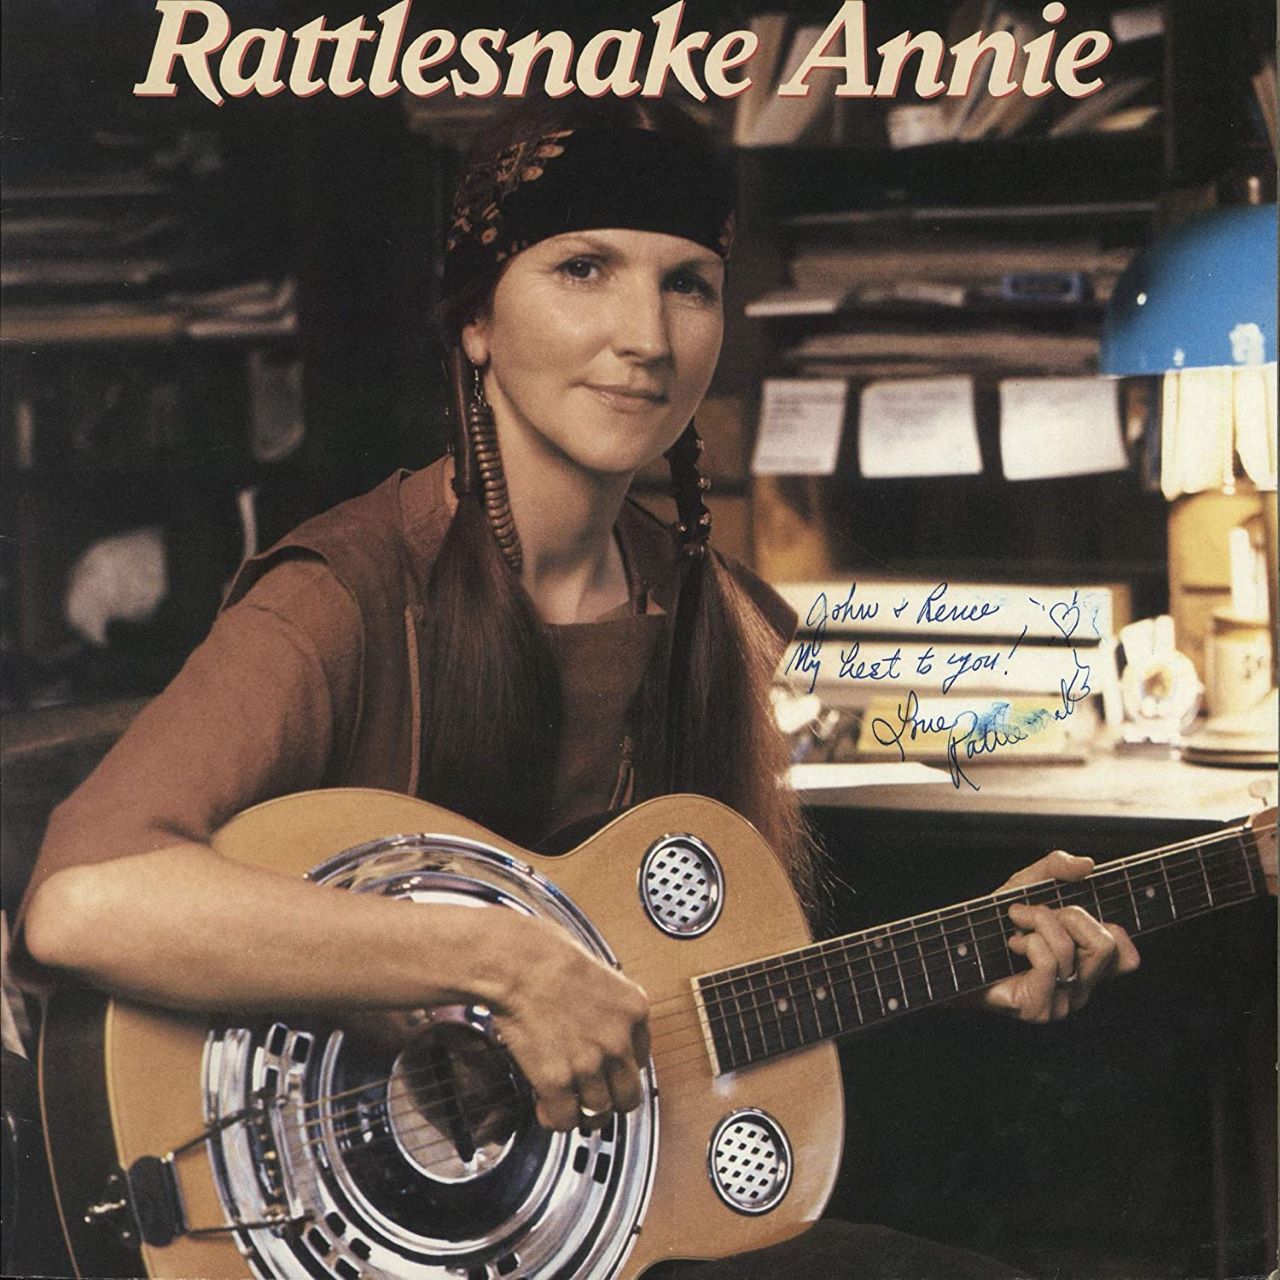 Rattlesnake Annie - Rattlesnake Annie cover album